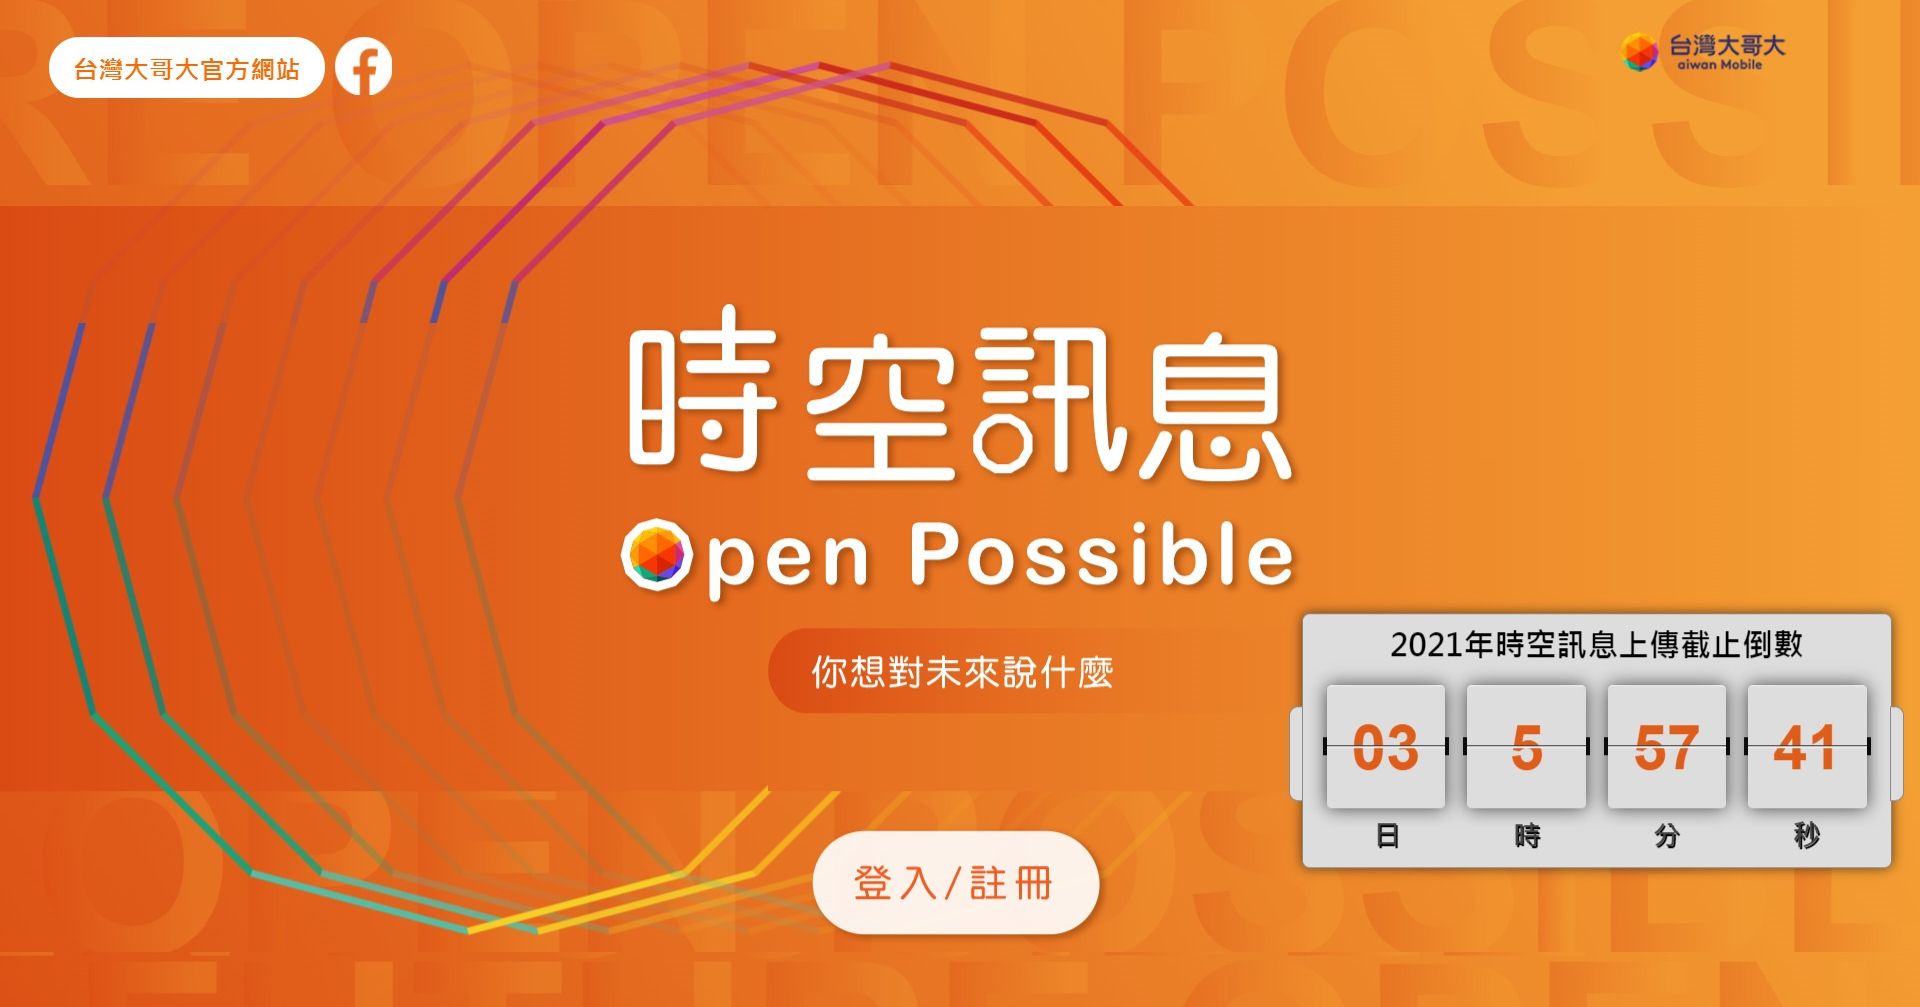 在「時空訊息 Open Possible」活動網站，選擇「登入/註冊」按鈕。